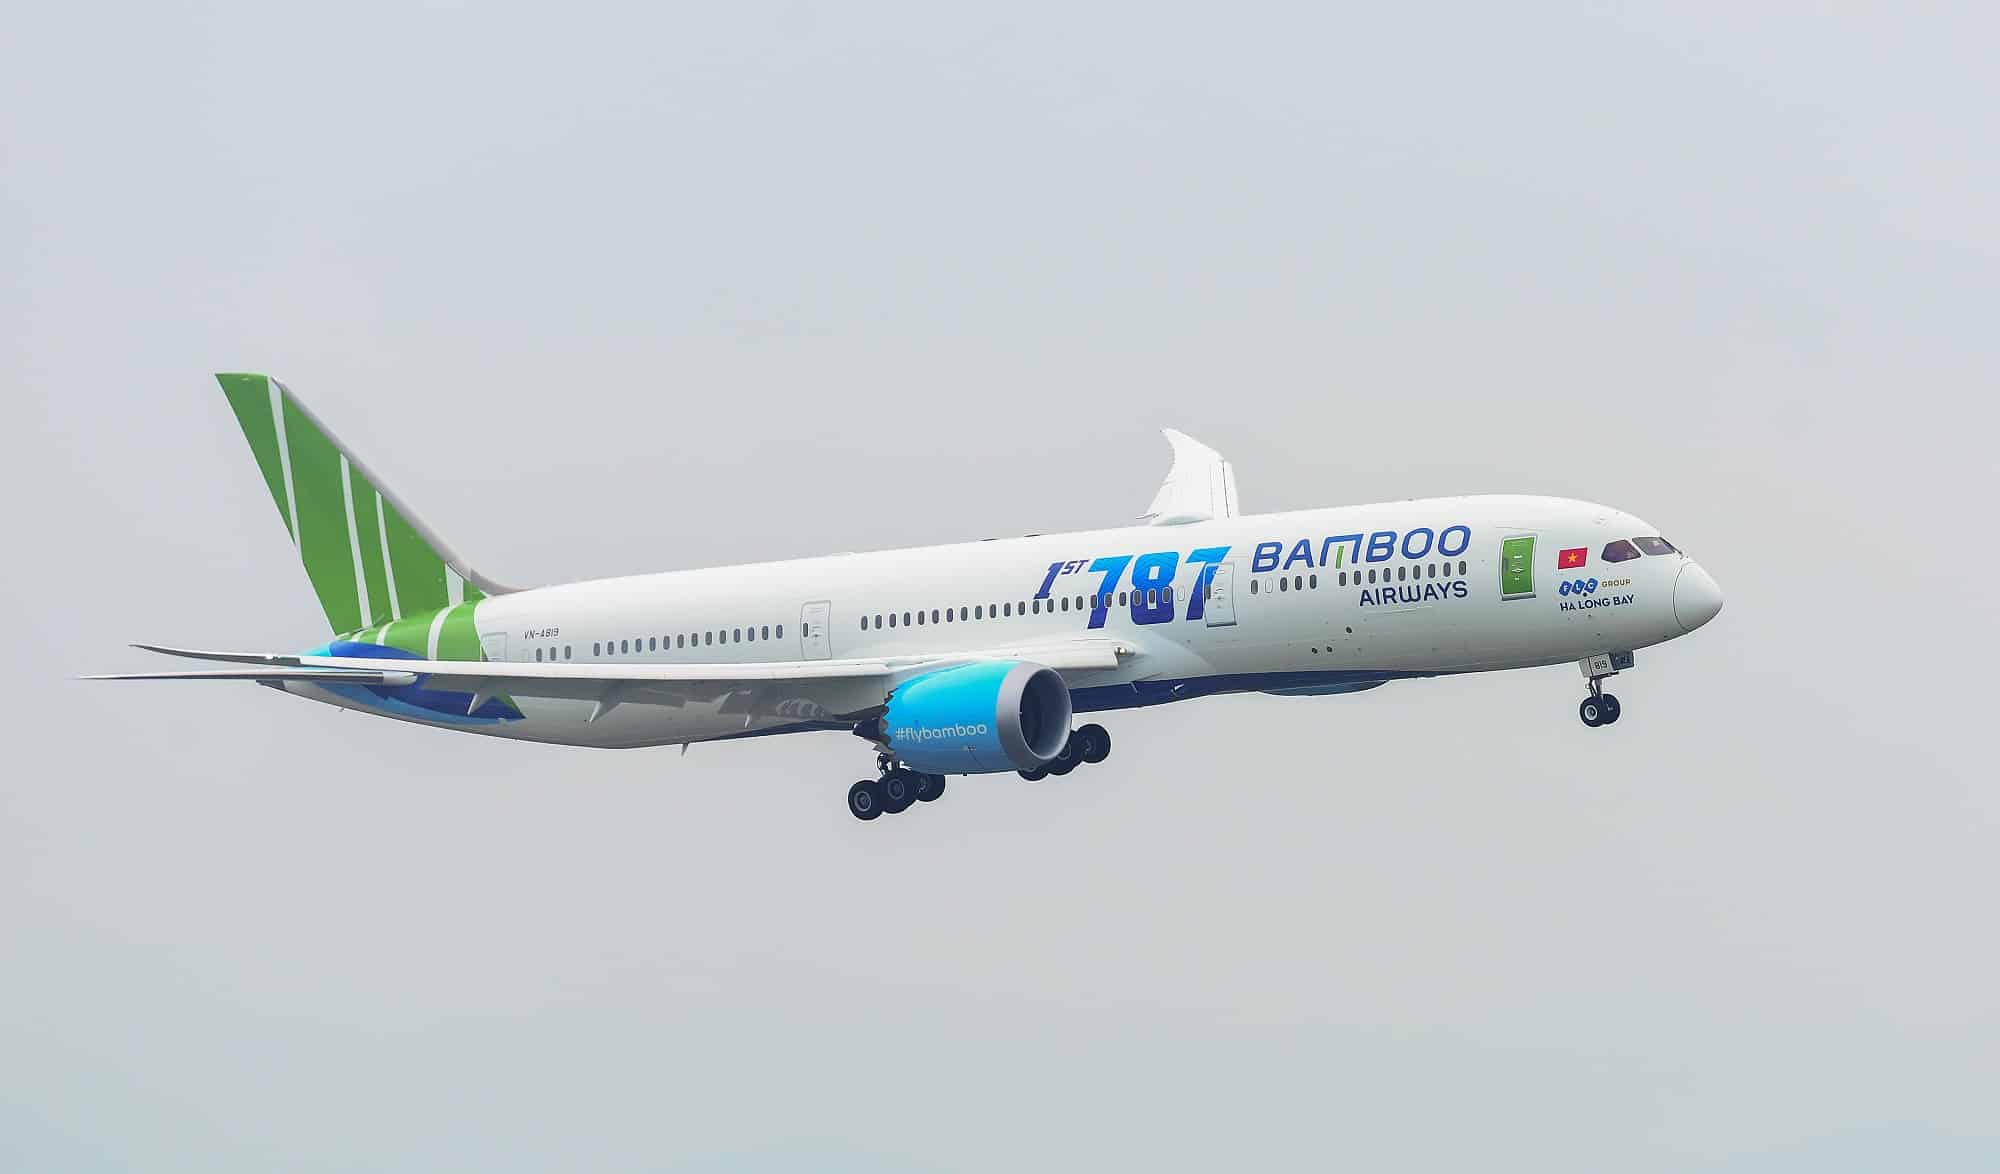 Bamboo Airways khai thác hãng đường bay thẳng từ Việt Nam sang Frankfurt.